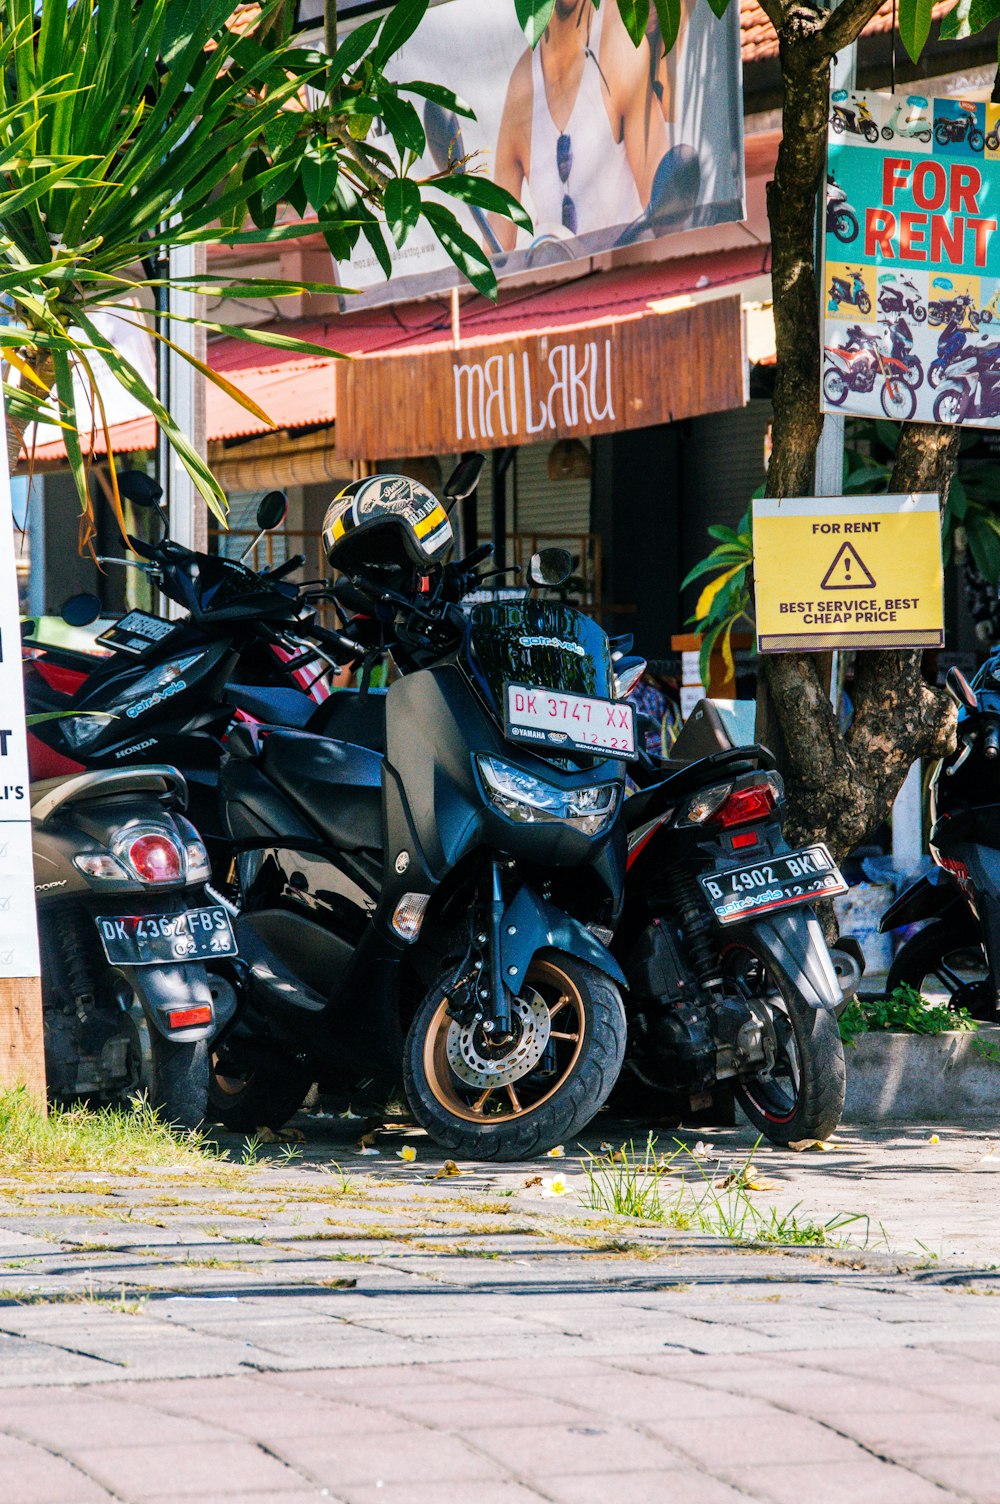 Un grupo de motos aparcadas una al lado de la otra